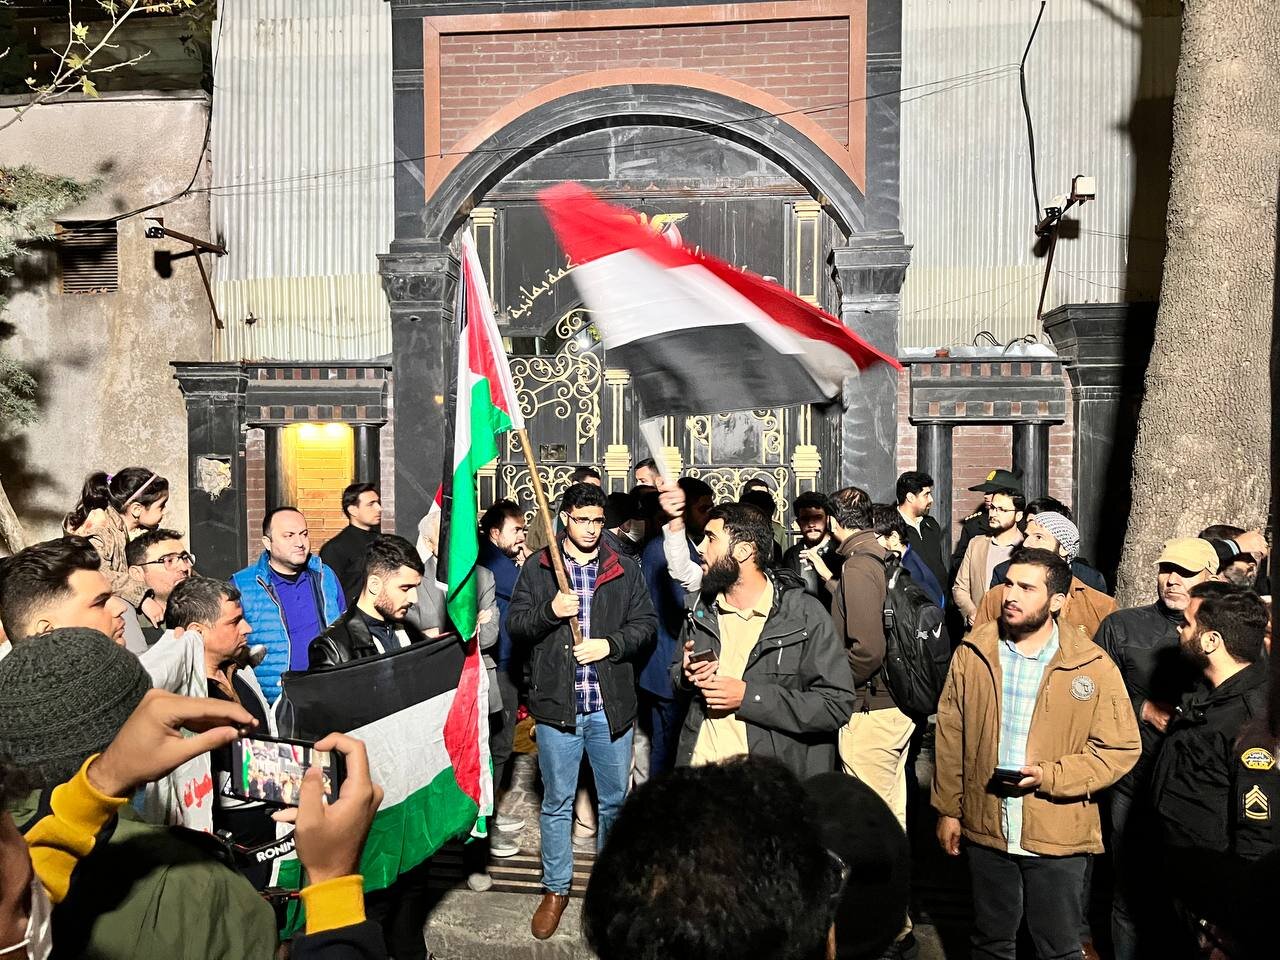 تہران، جوانوں کا انصاراللہ اور فلسطینیوں کے حق میں یمنی سفارت خانے کے باہر اجتماع، ویڈیو اور تصاویر